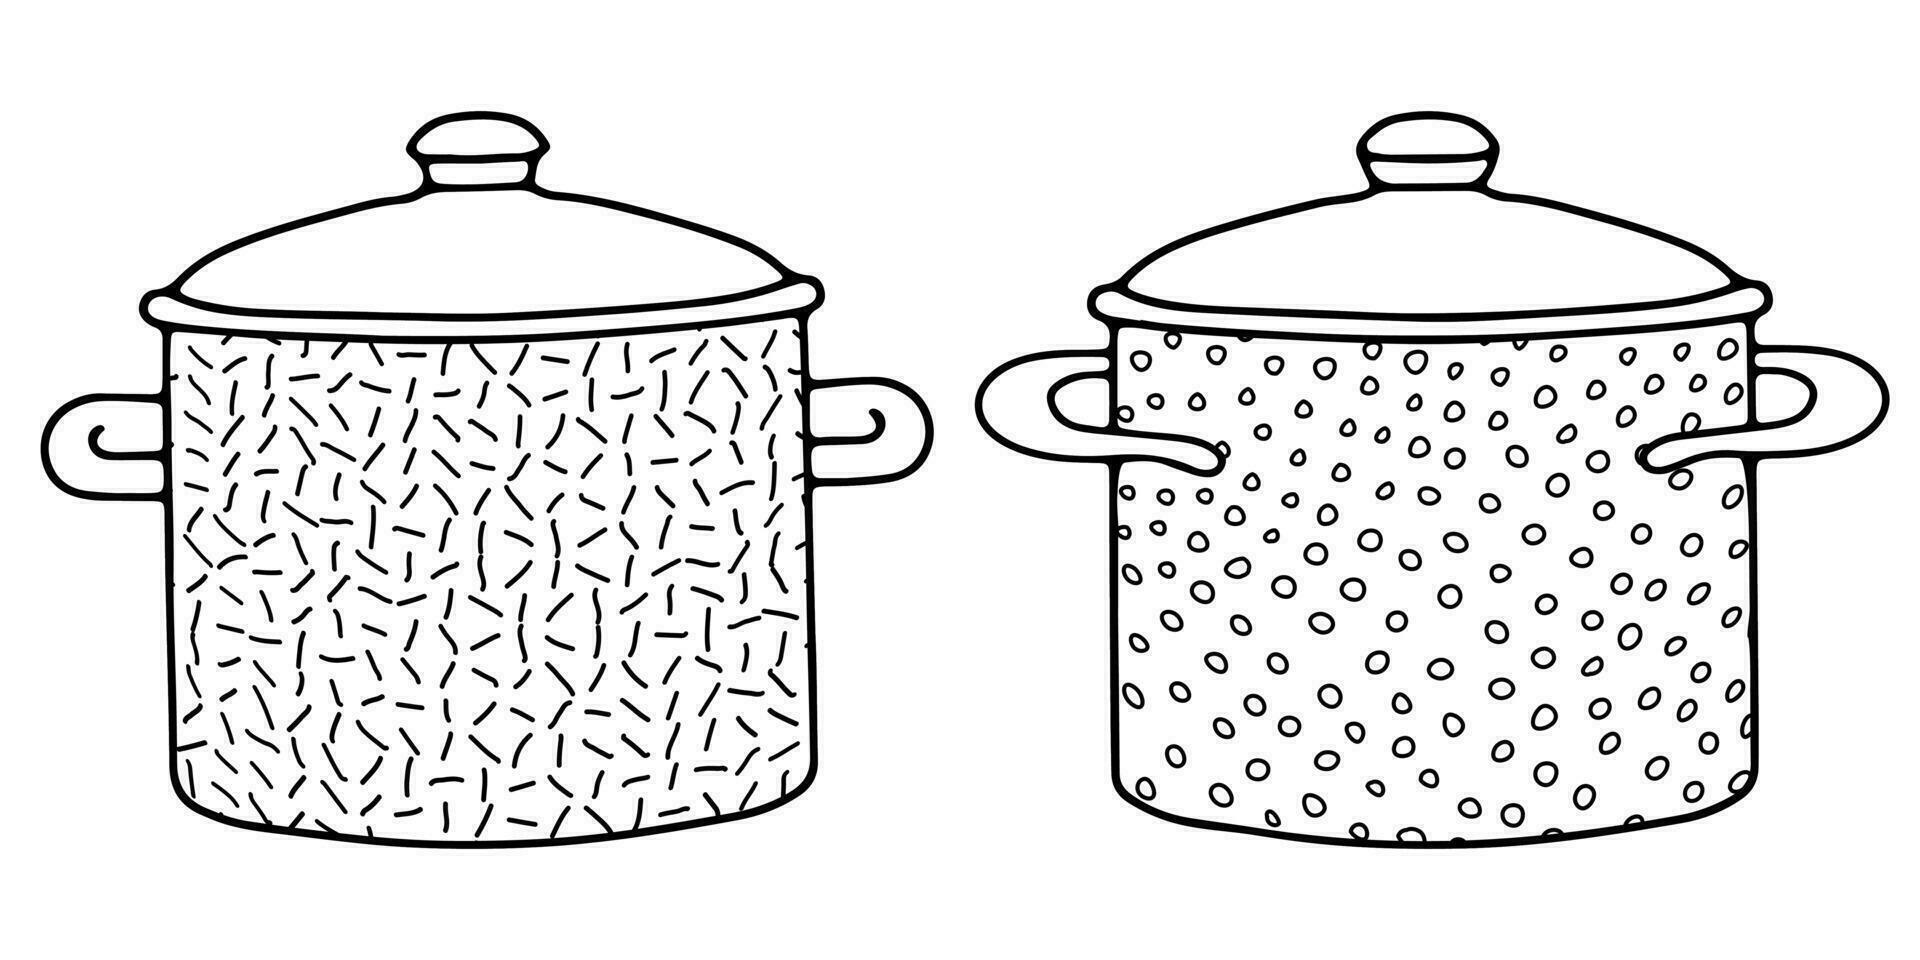 schetsen beeld van keuken servies, pan, pot, pan. doodles van borden, servies, gebruiksvoorwerpen, servies, keukengerei vector